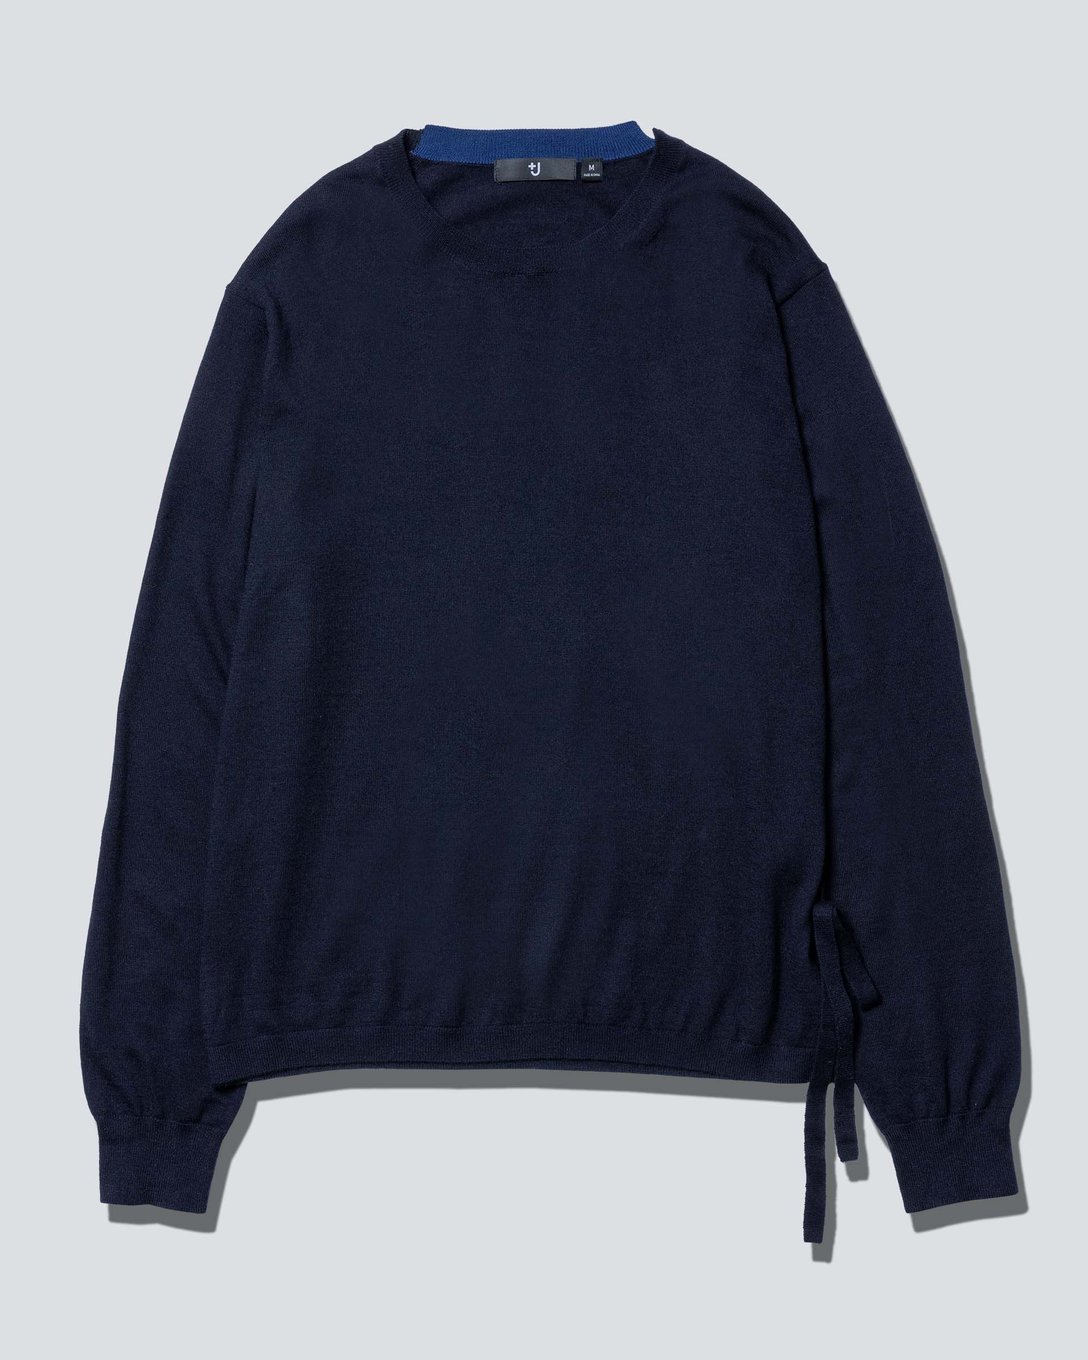 ファインゲージカシミヤクルーネックセーター（長袖）（ネイビー、1万2900円） Image by FASHIONSNAP